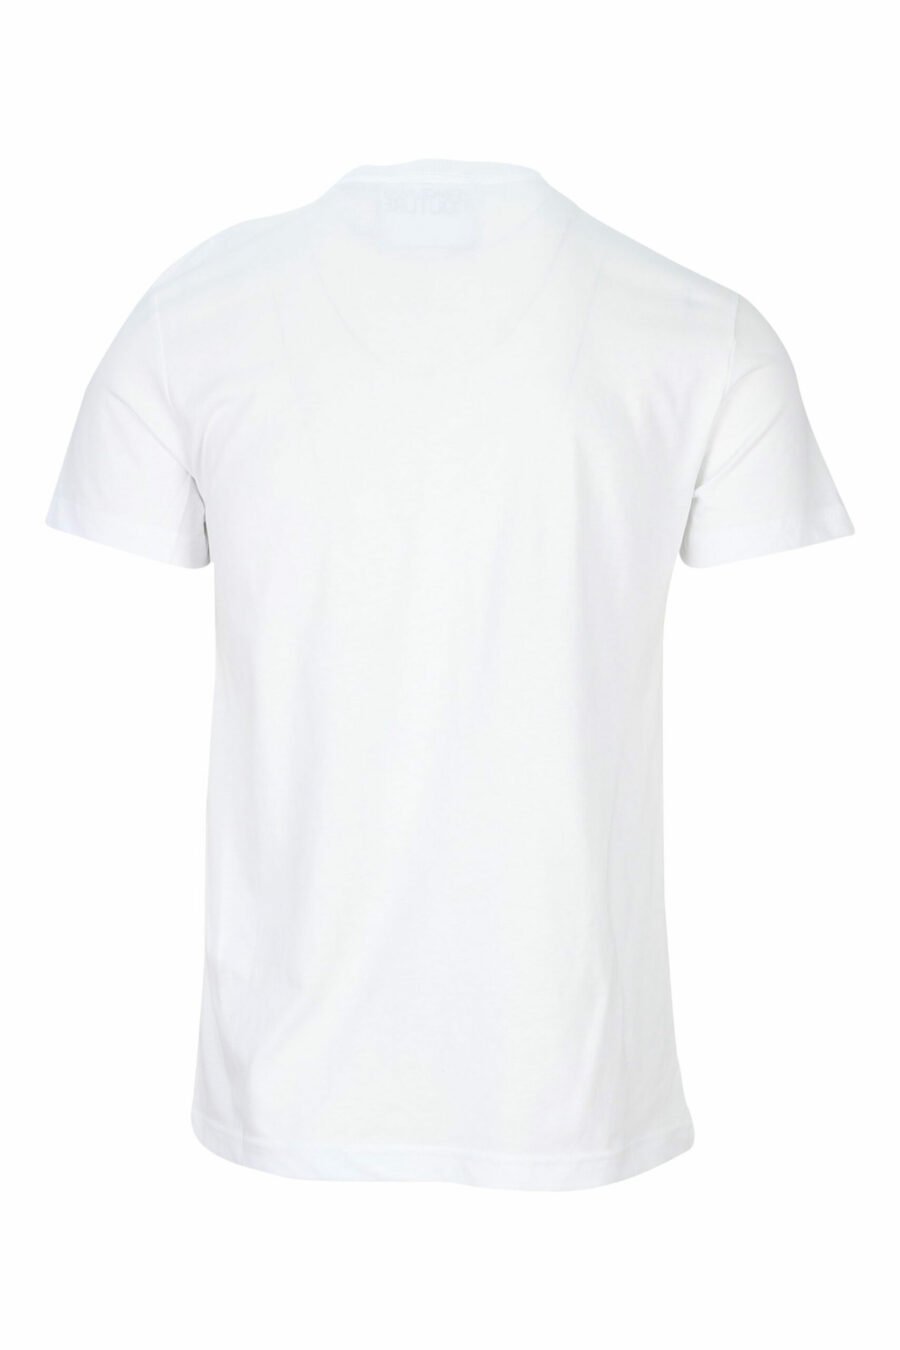 Weißes T-Shirt mit schwarzem kreisförmigen Mini-Logo - 8052019468526 1 skaliert